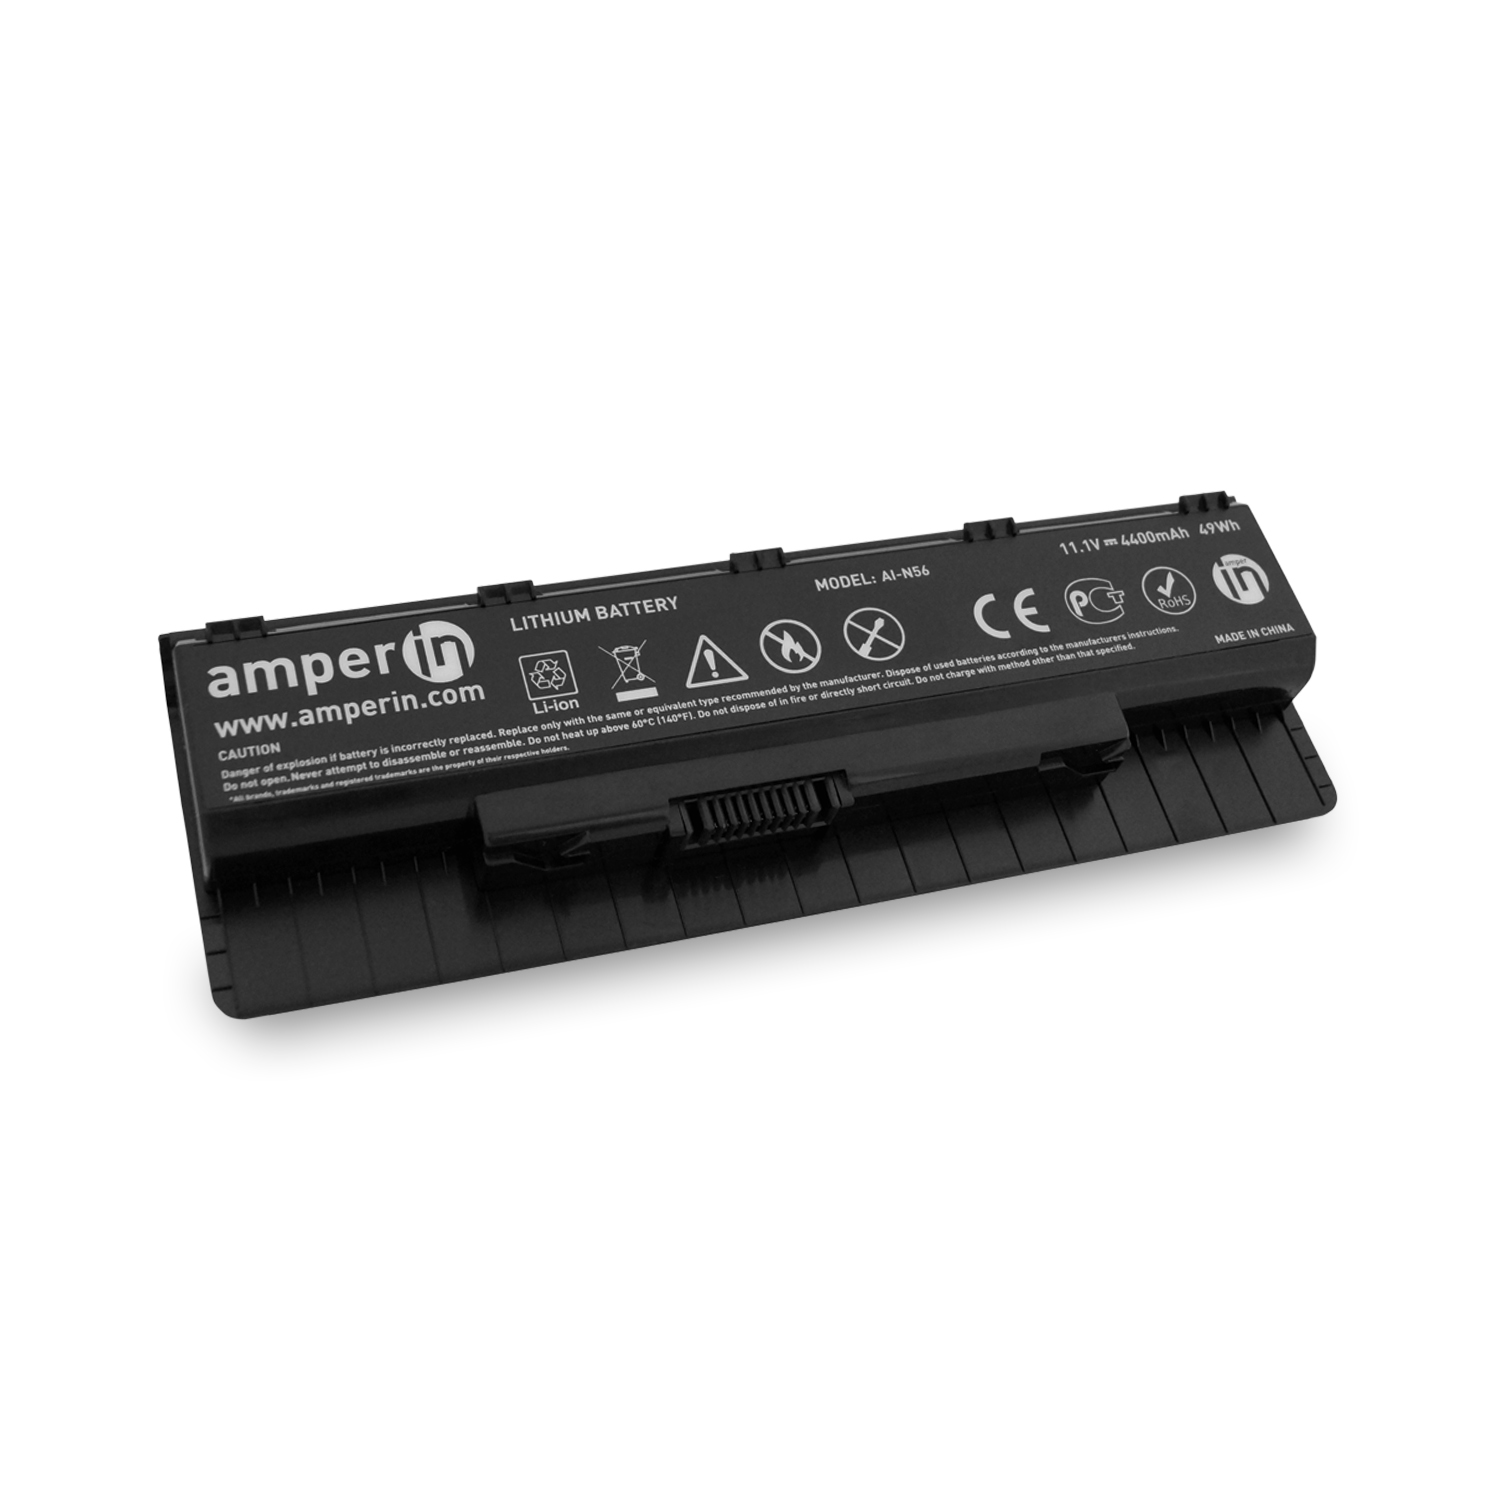 Аккумуляторная батарея AI-N56 для ноутбука Asus N Series 11.1v 4400mAh (49Wh) Amperin